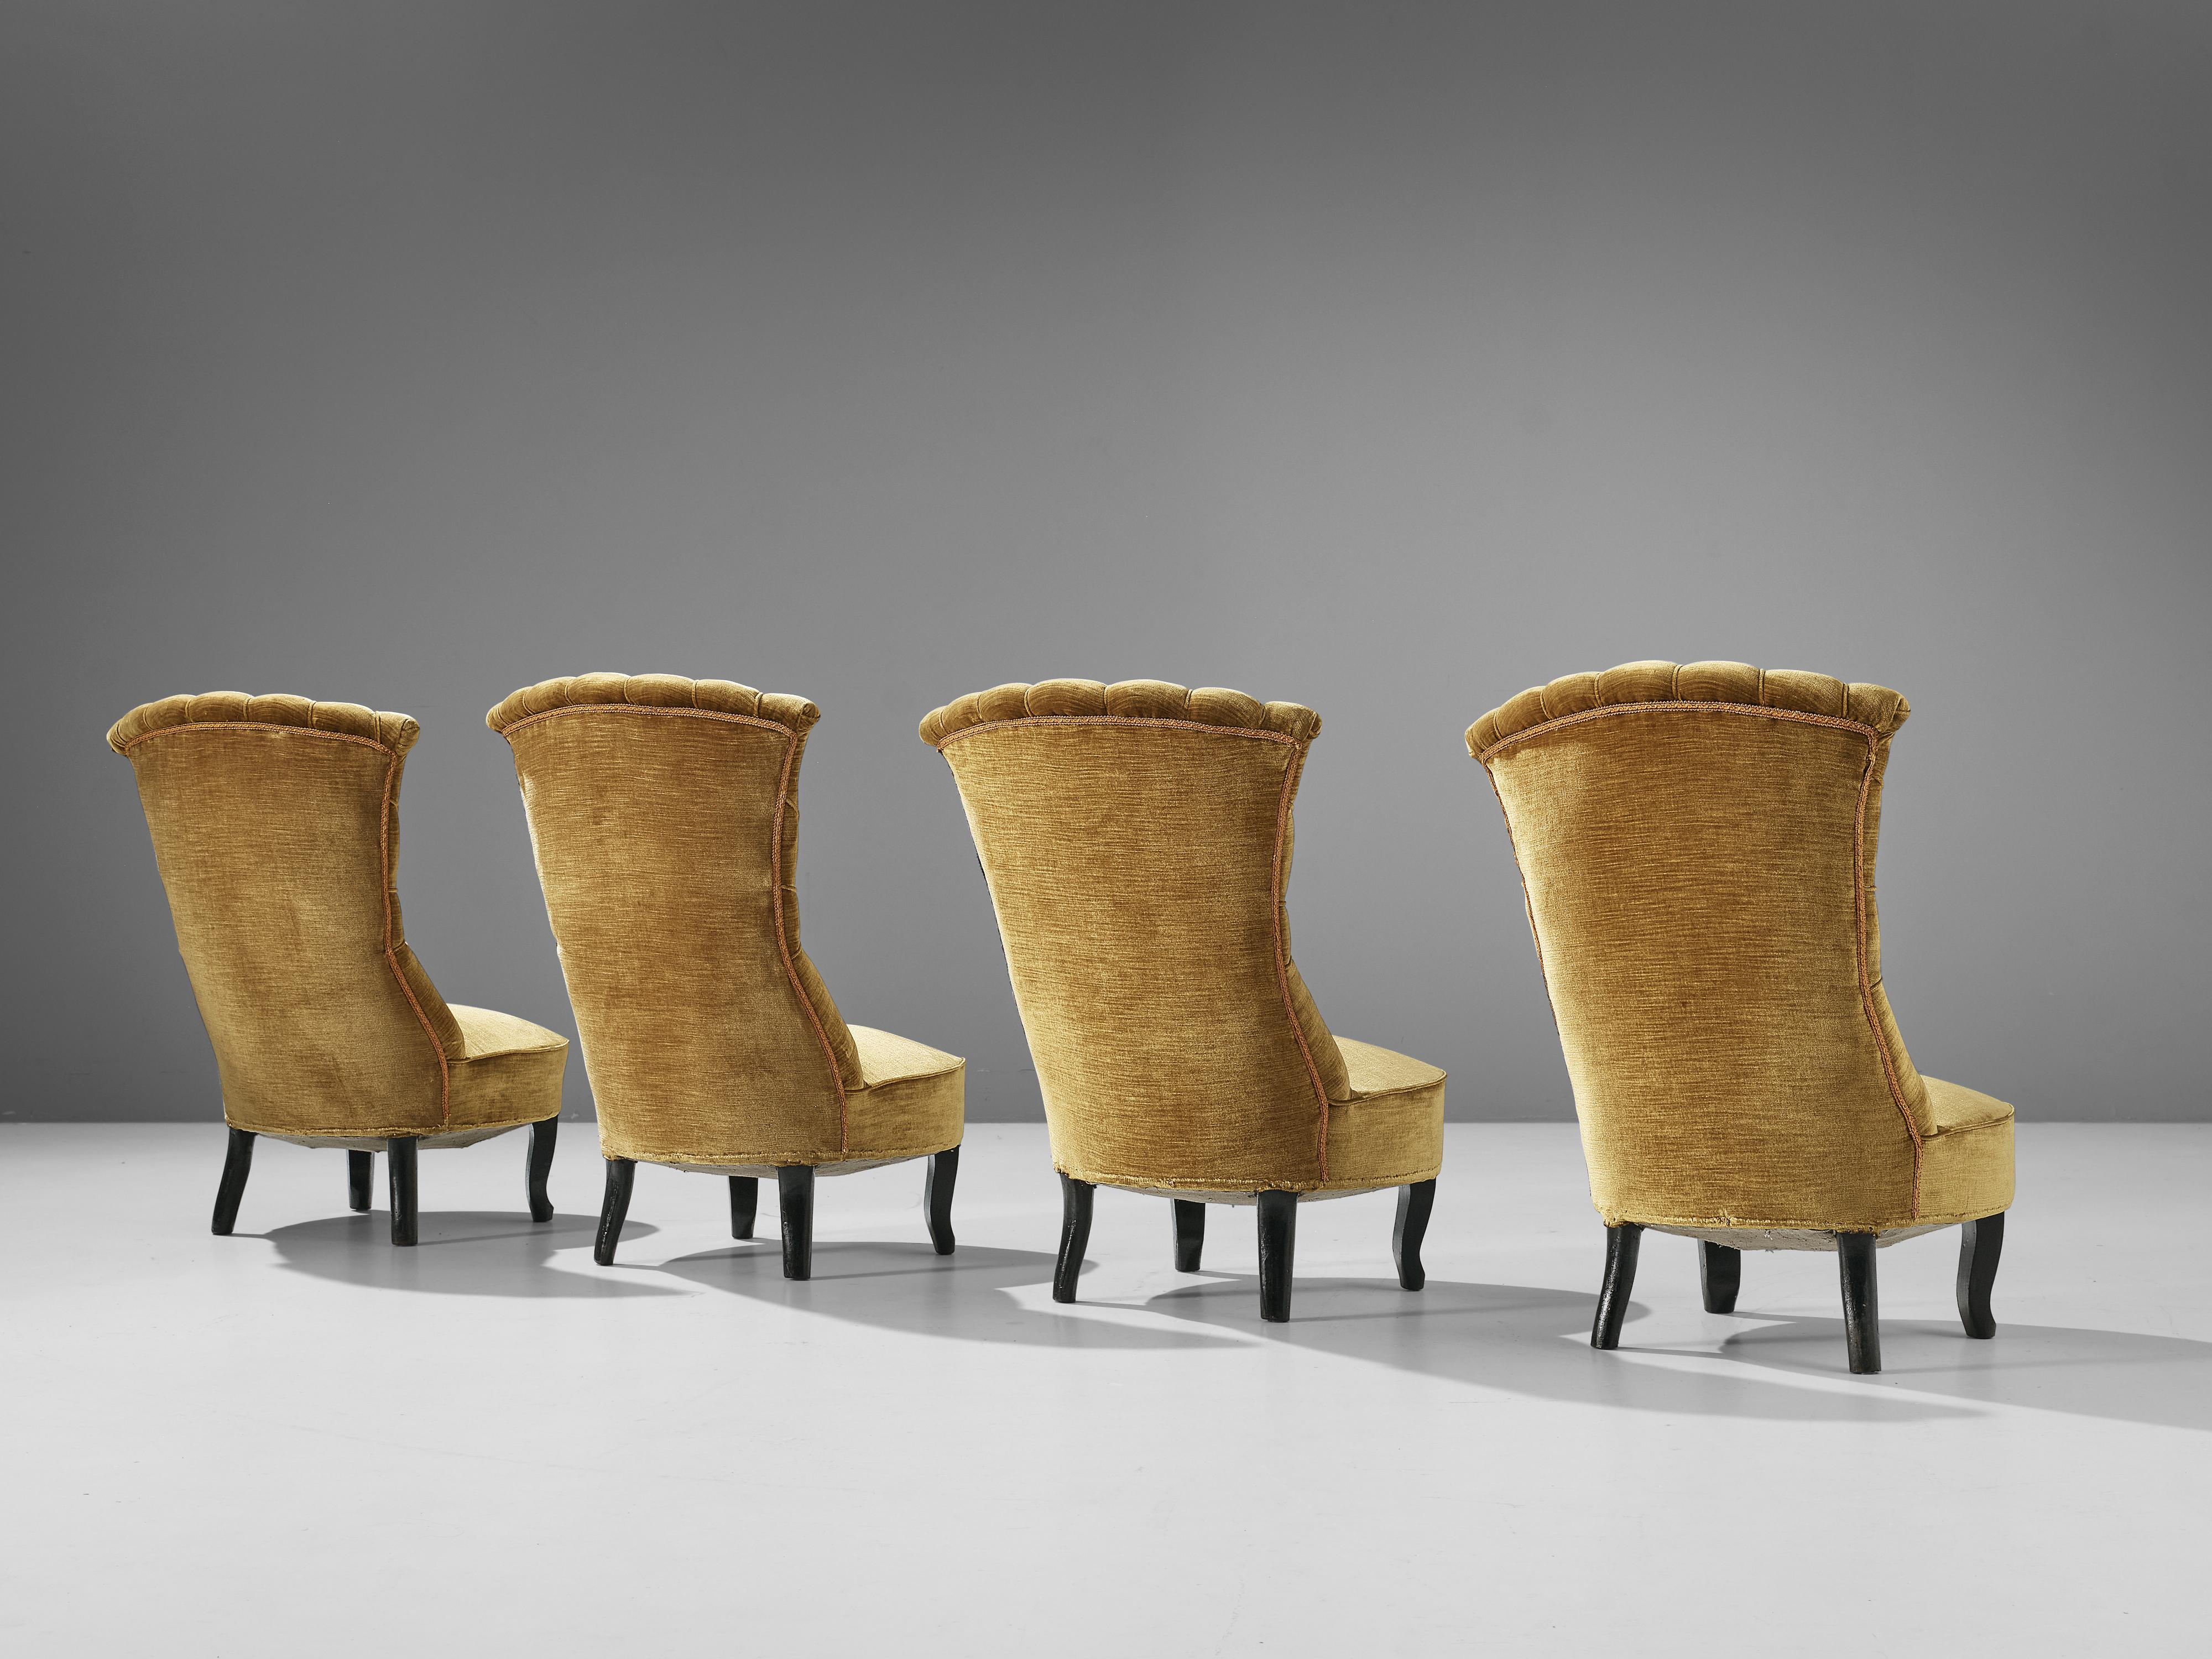 Chaises d'appoint, velours, bois, France, années 1930

Elegant ensemble de chaises Art Déco. L'assise des chaises est tapissée d'un velours moutarde très classe, ce qui ajoute à l'esthétique de la chaise. Le dossier présente une belle décoration qui